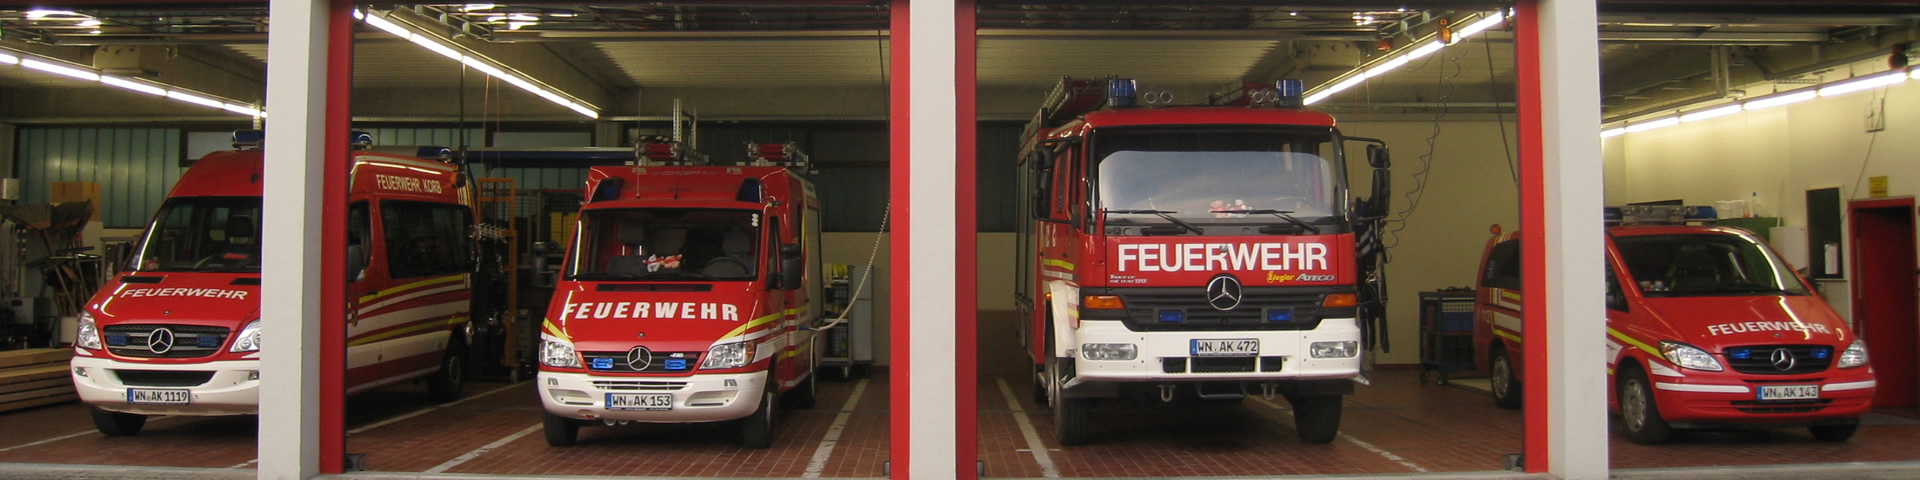 Feuerwehrhaus Korb mit Fahrzeugen